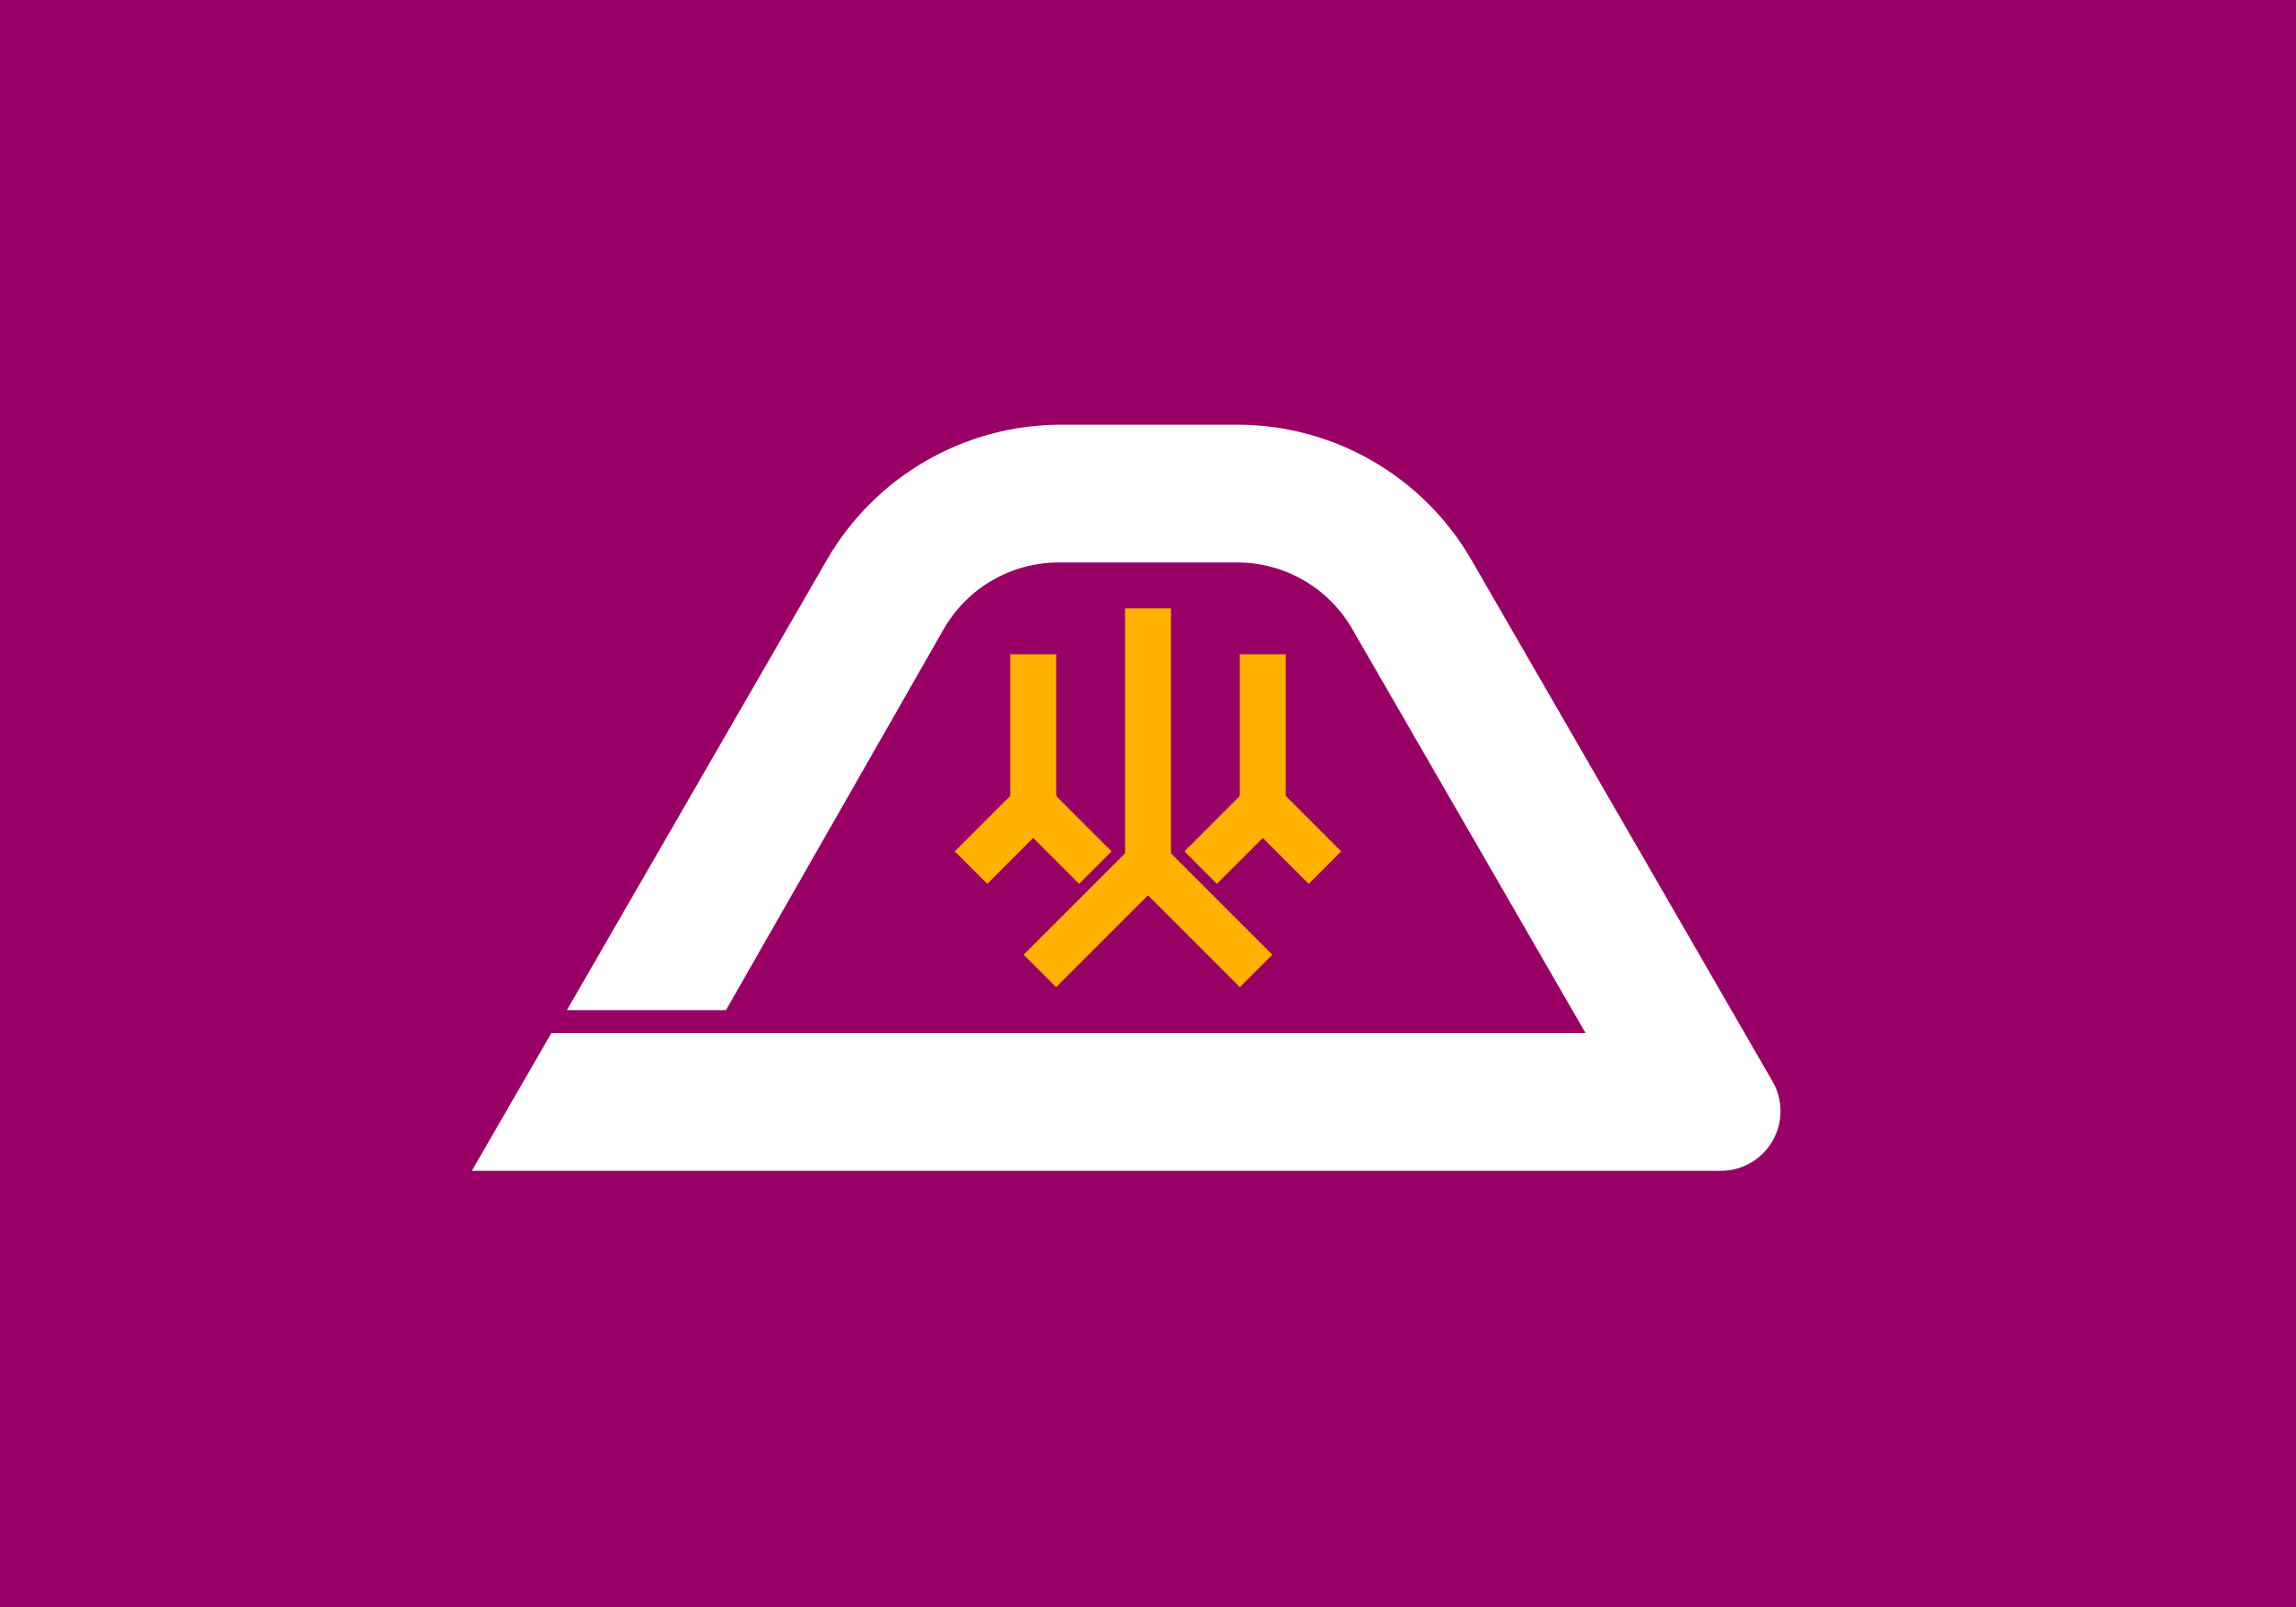 yamanashi